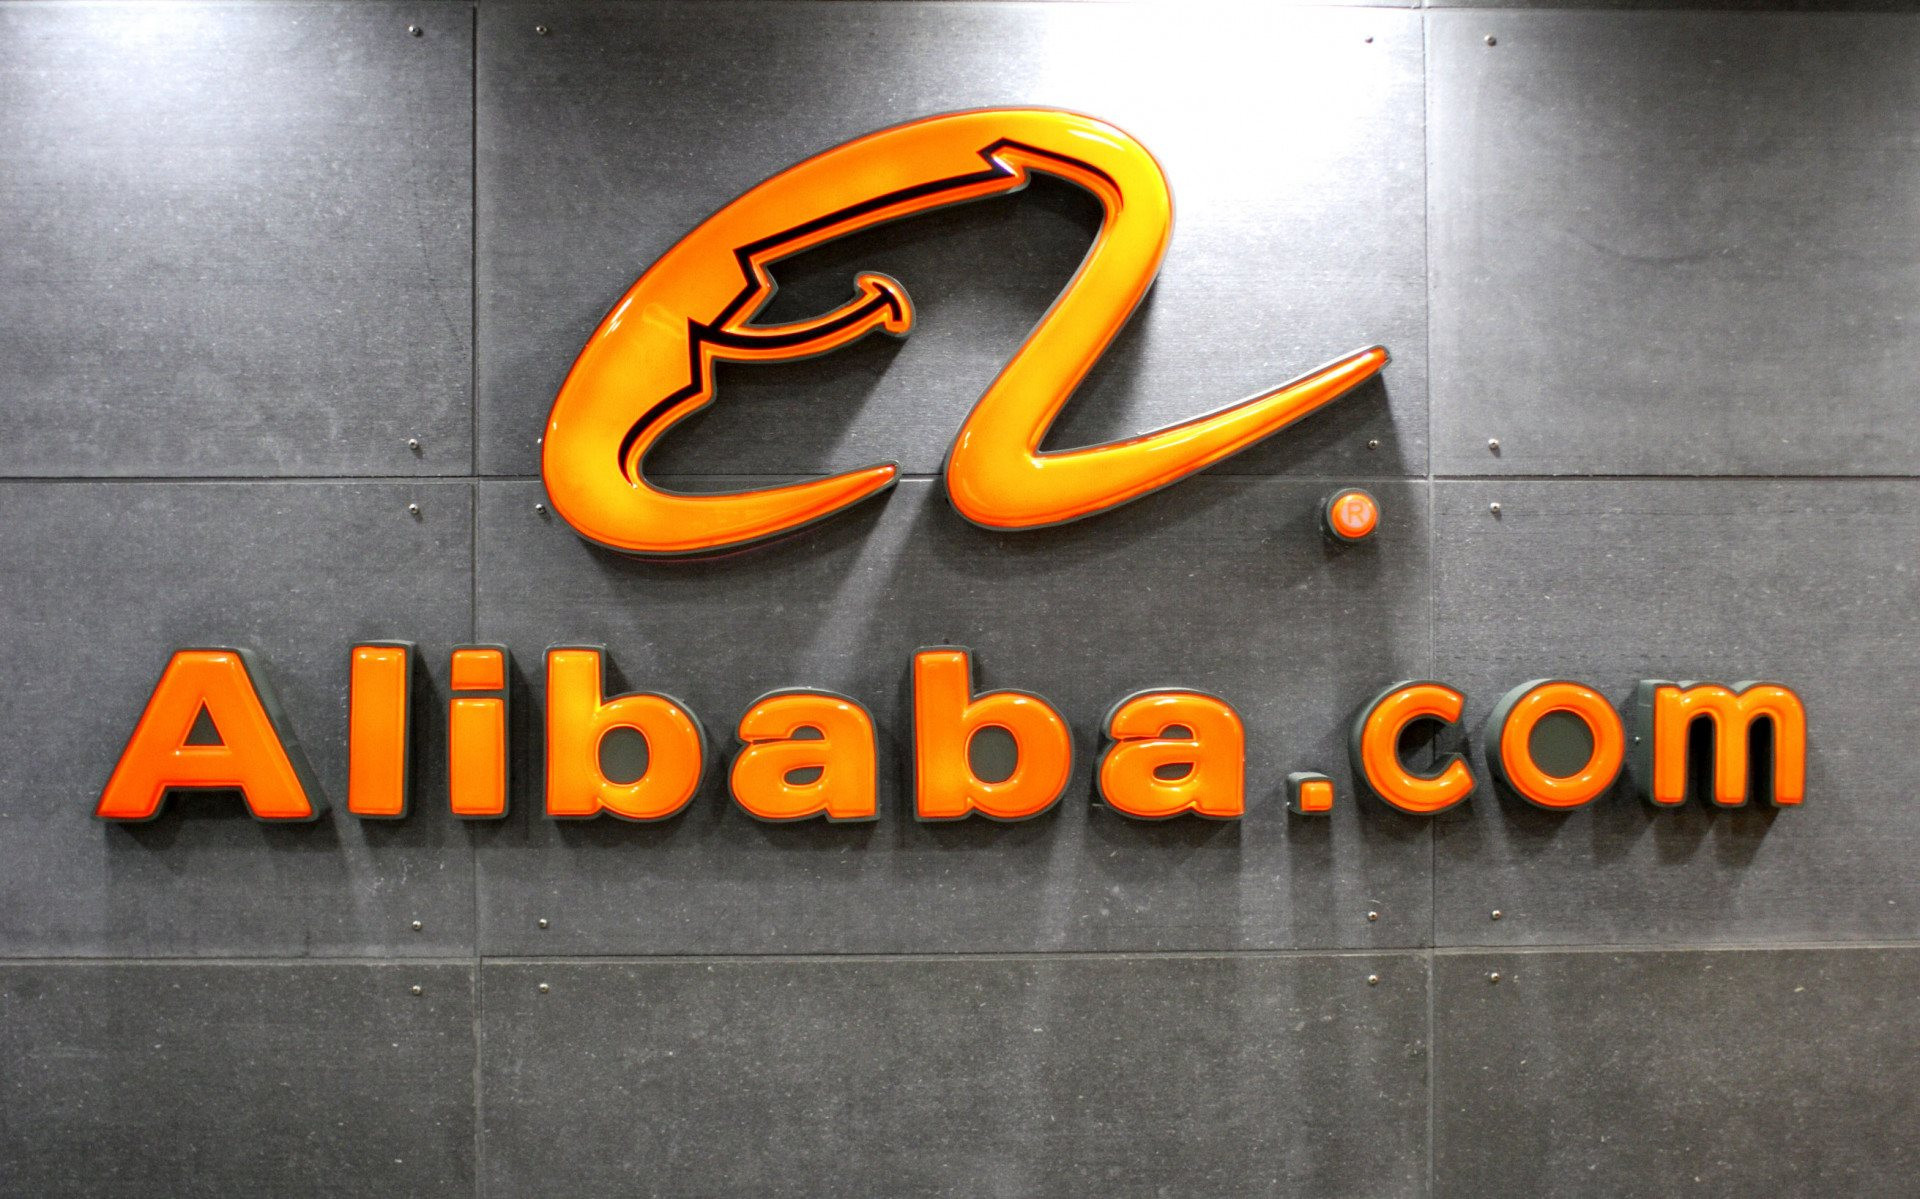 Cổ phiếu Alibaba tăng vọt sau bài đăng của nhà sáng lập Jack Ma với lời khen về sự chuyển đổi của gã khổng lồ công nghệ này- Ảnh 1.